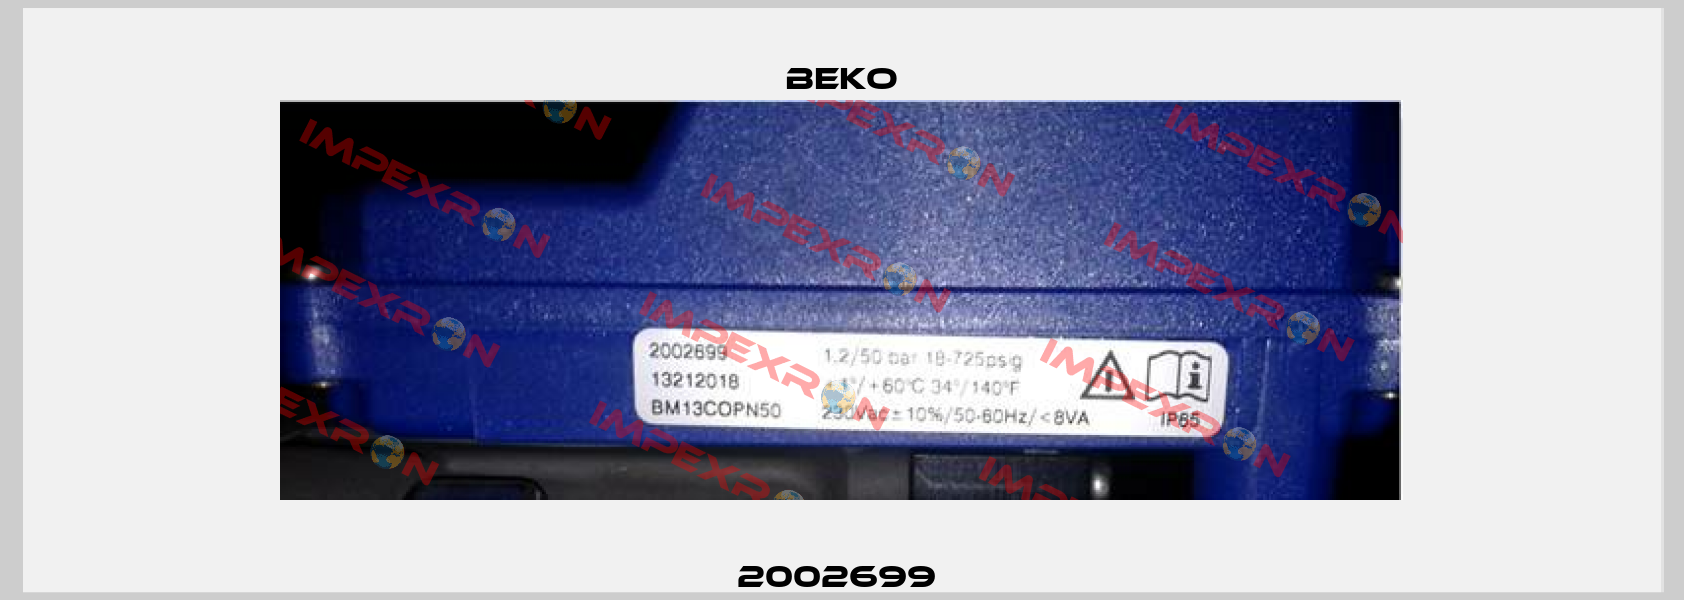 2002699  Beko